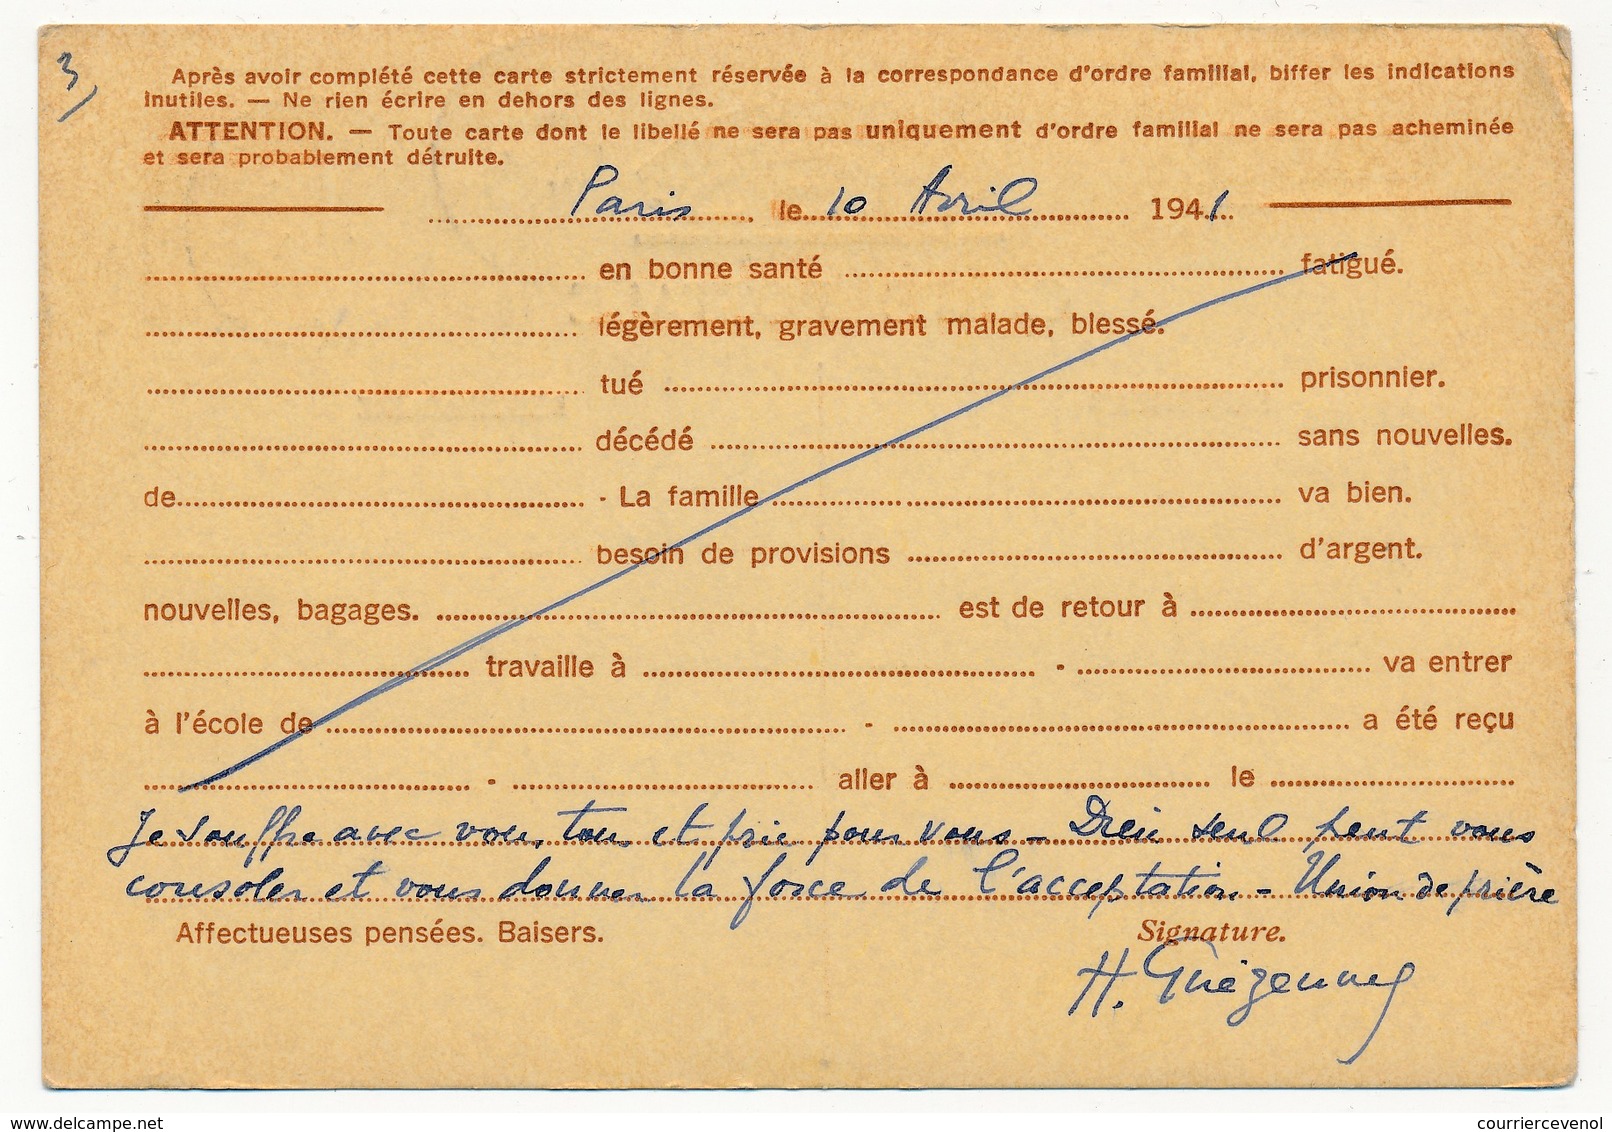 FRANCE - CP Interzones Type Iris - 0,90F - Oblitérée Paris 89 Rue St Romain - 1941 - Cartes Postales Types Et TSC (avant 1995)